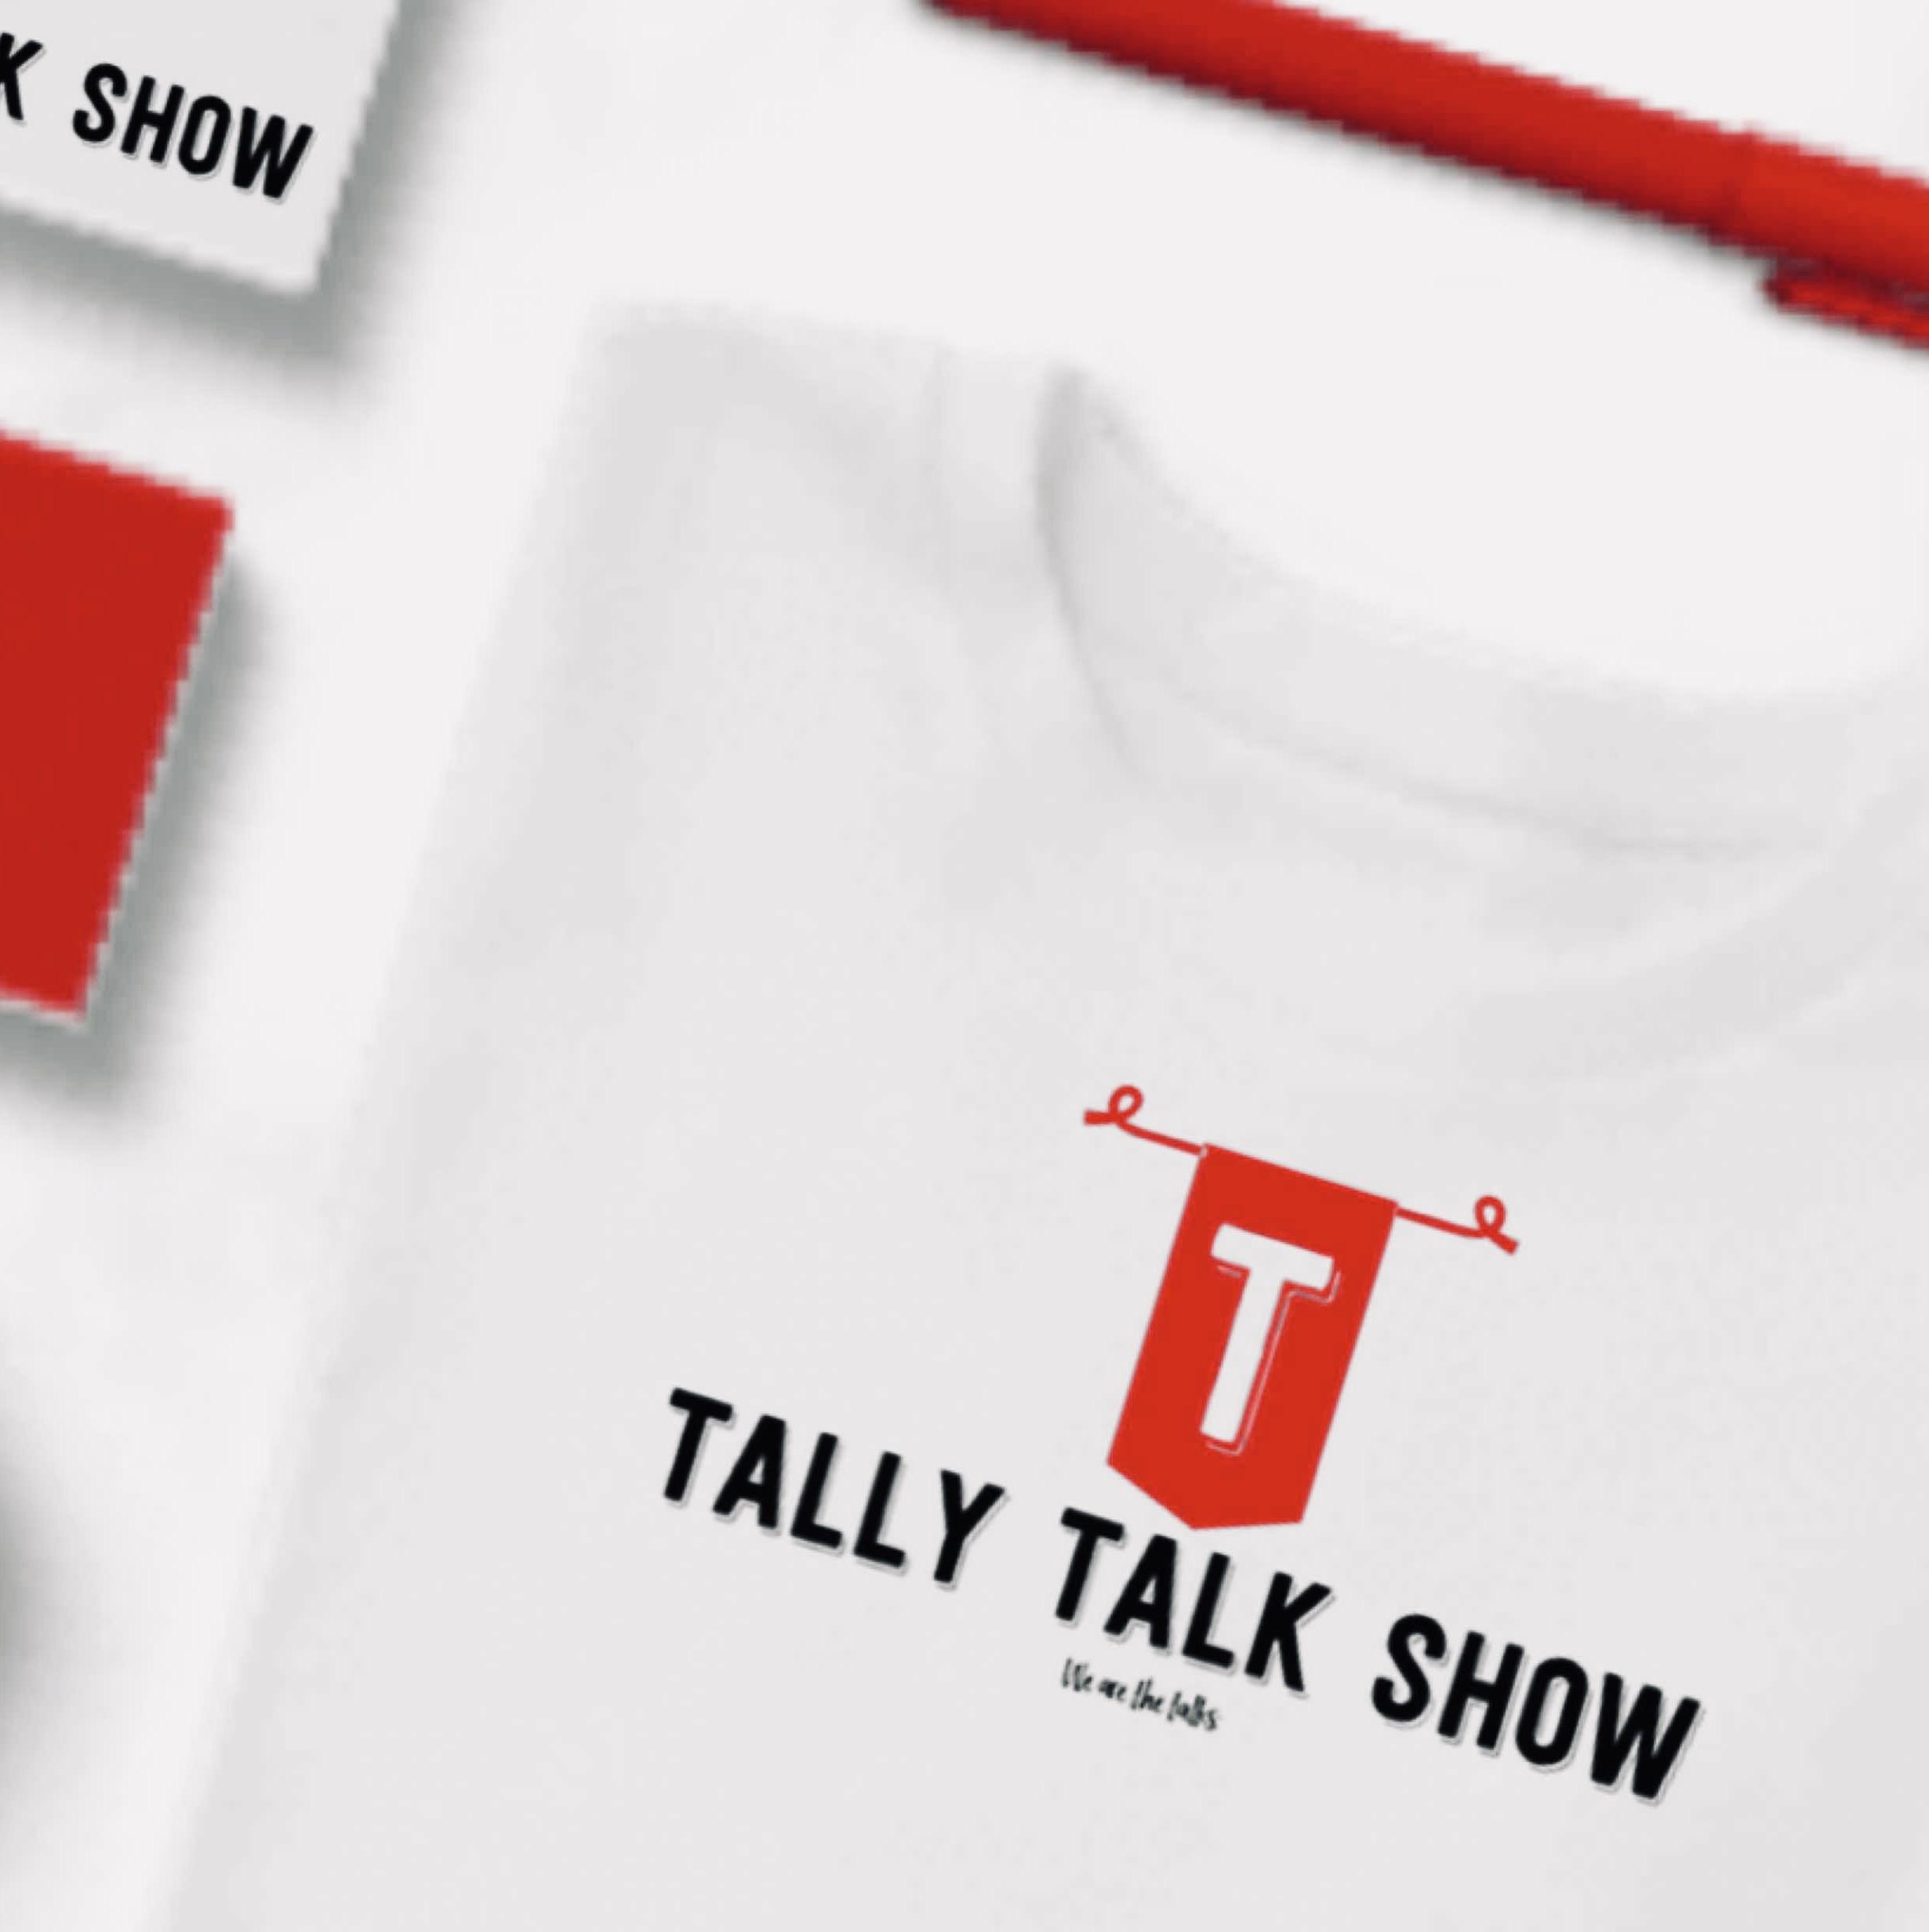 TalkyTalkShow